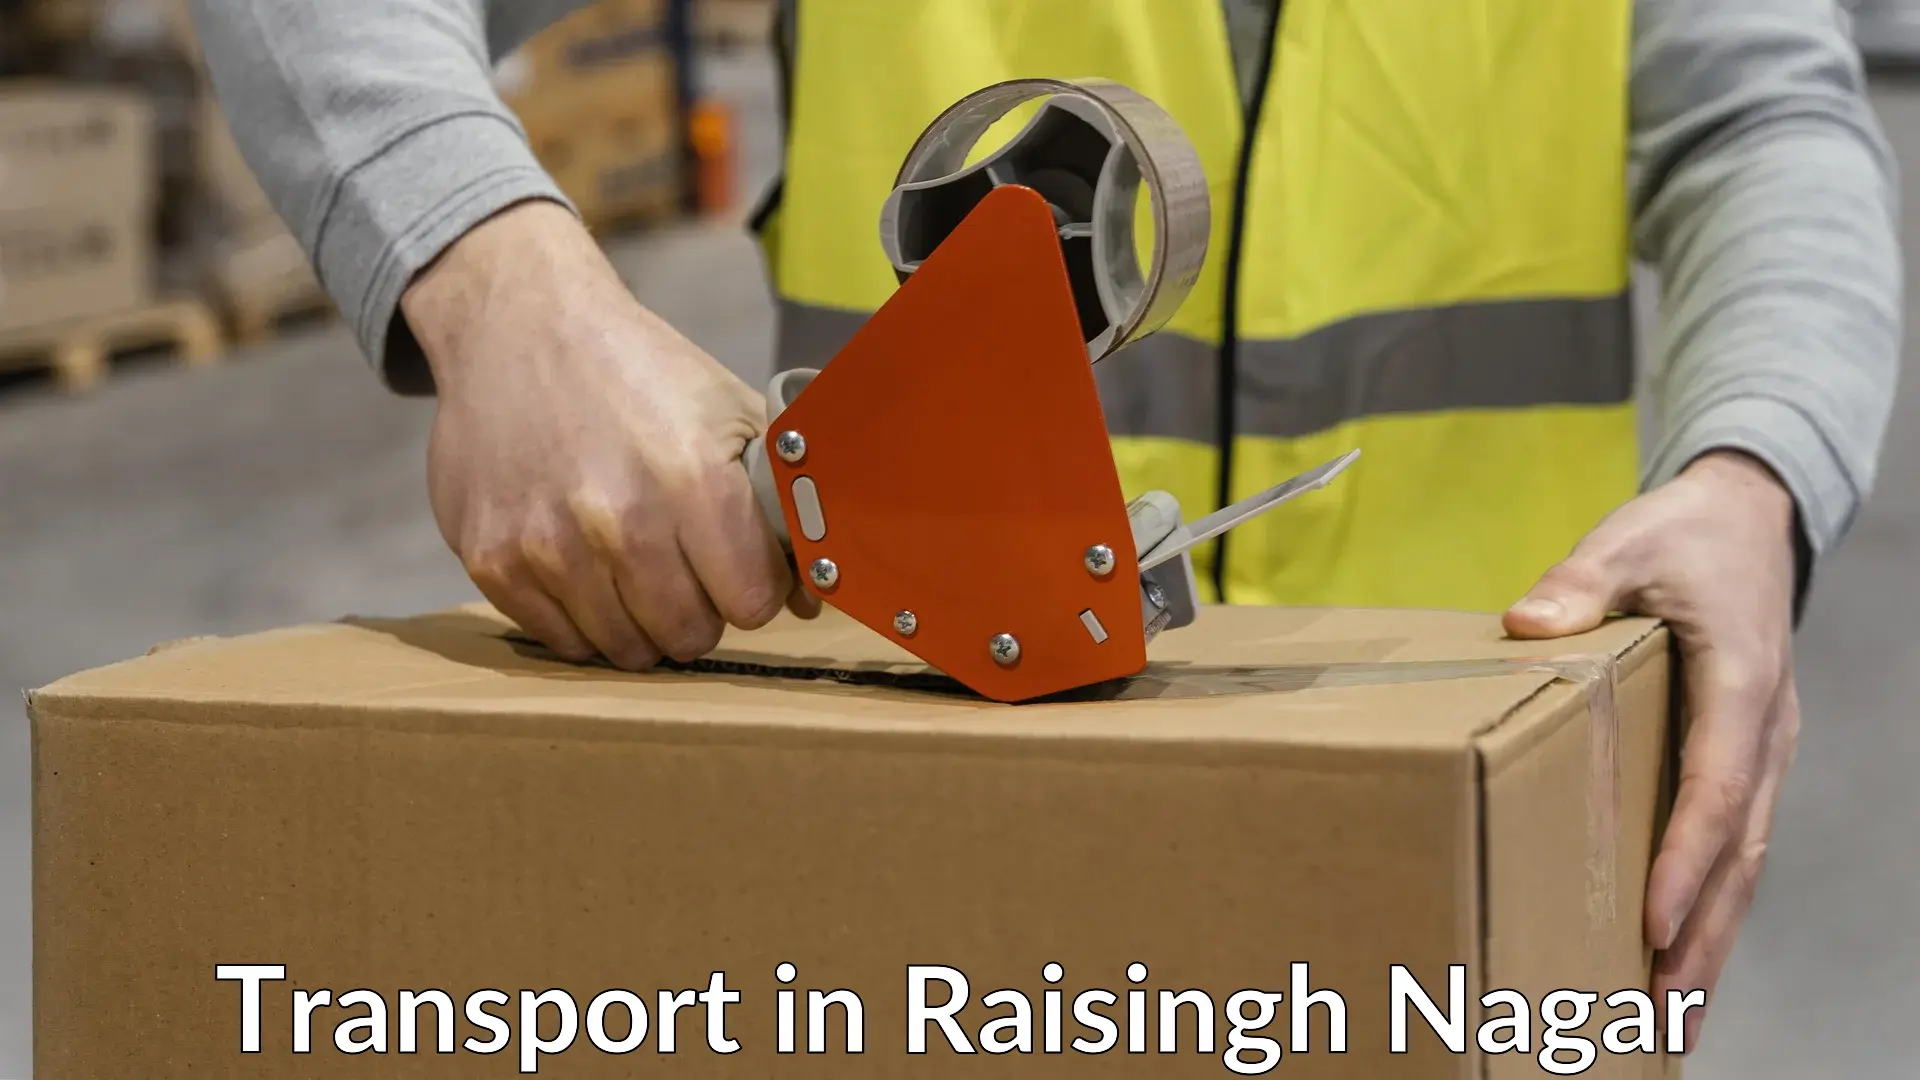 Intercity goods transport in Raisingh Nagar